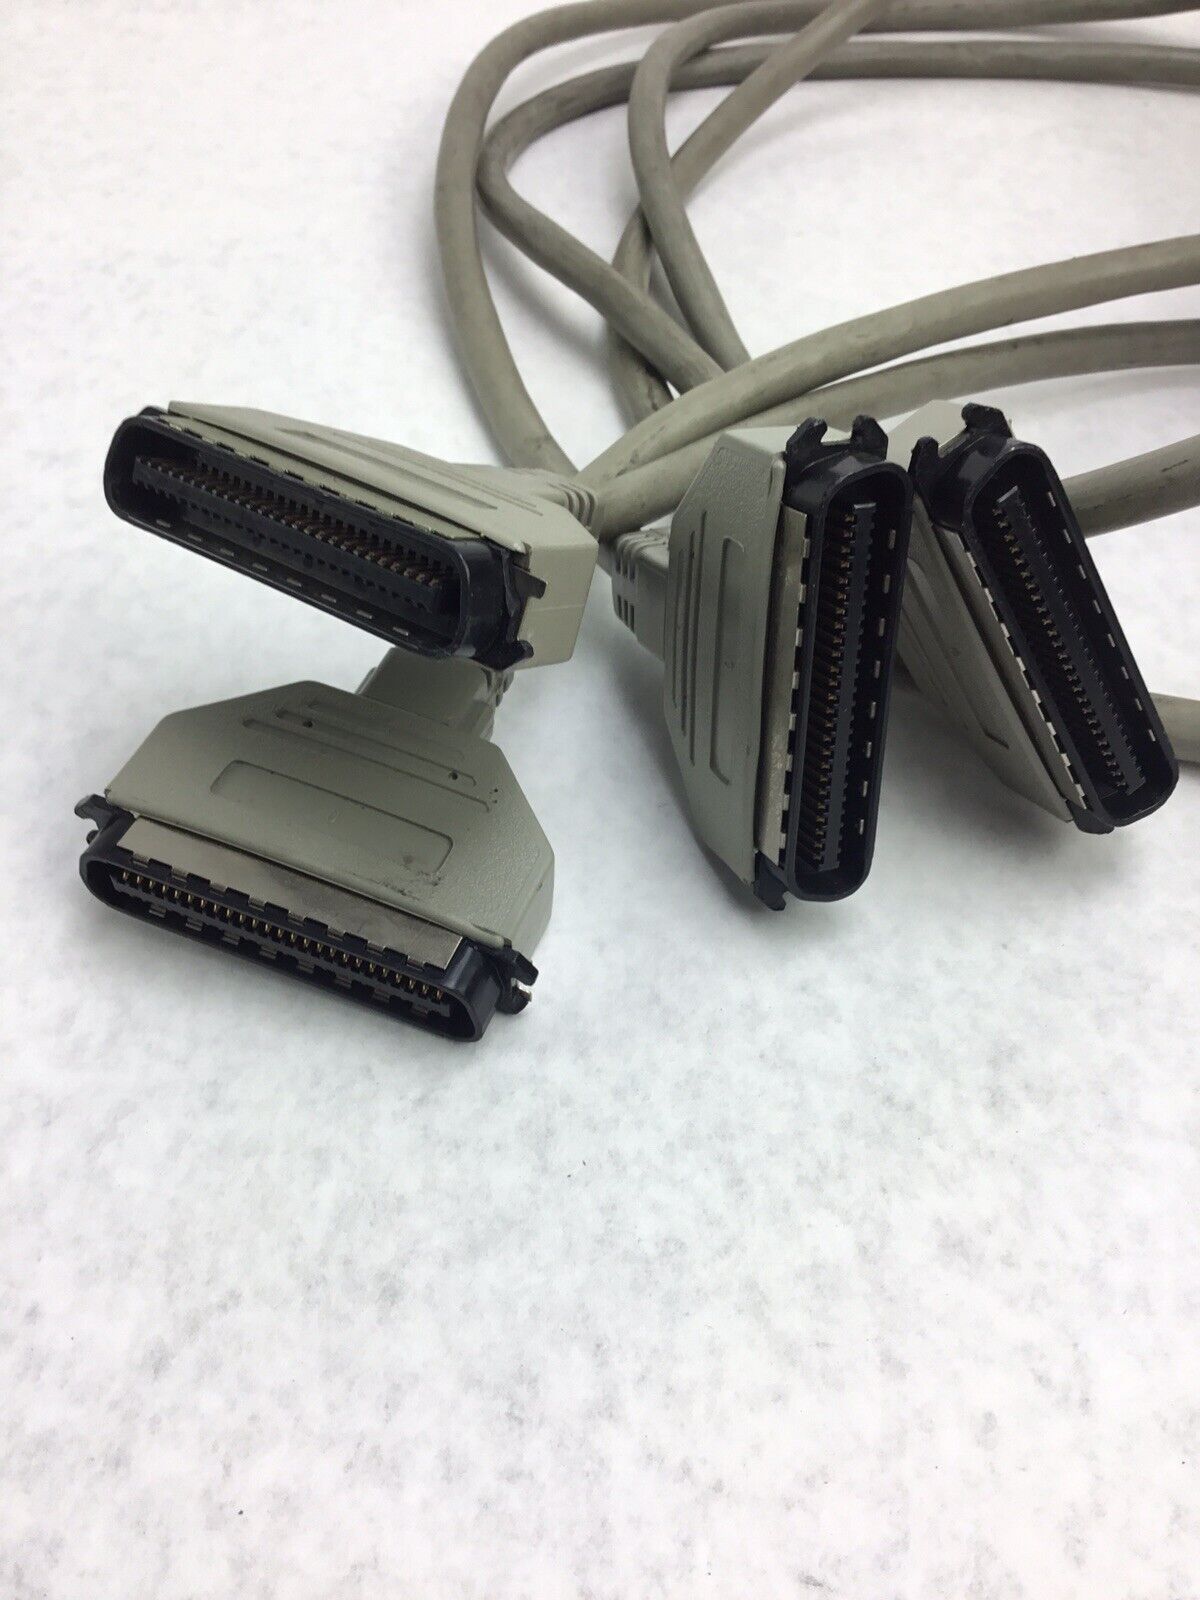 Wang Printer Interface Cable 421-0182 Lot of (2)